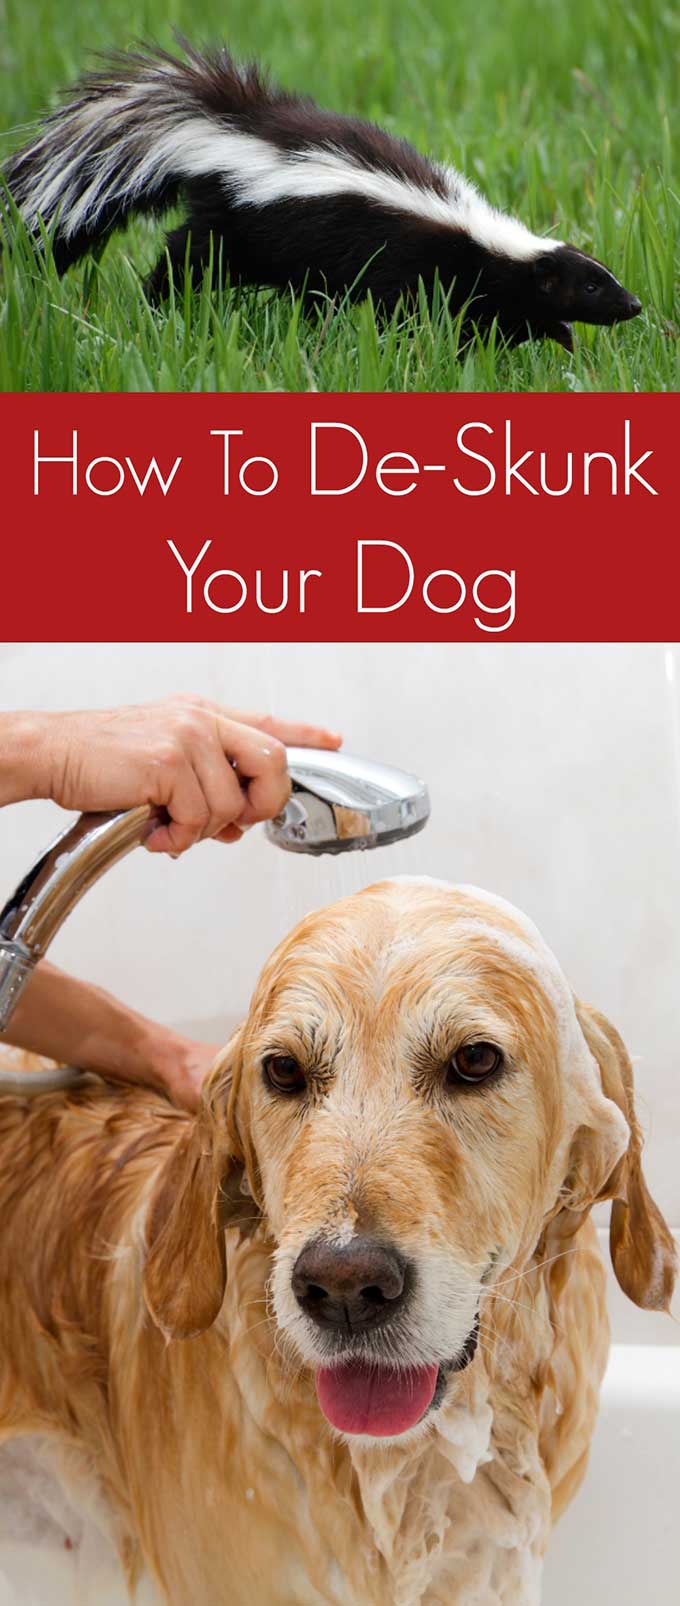 How to de-skunk your dog